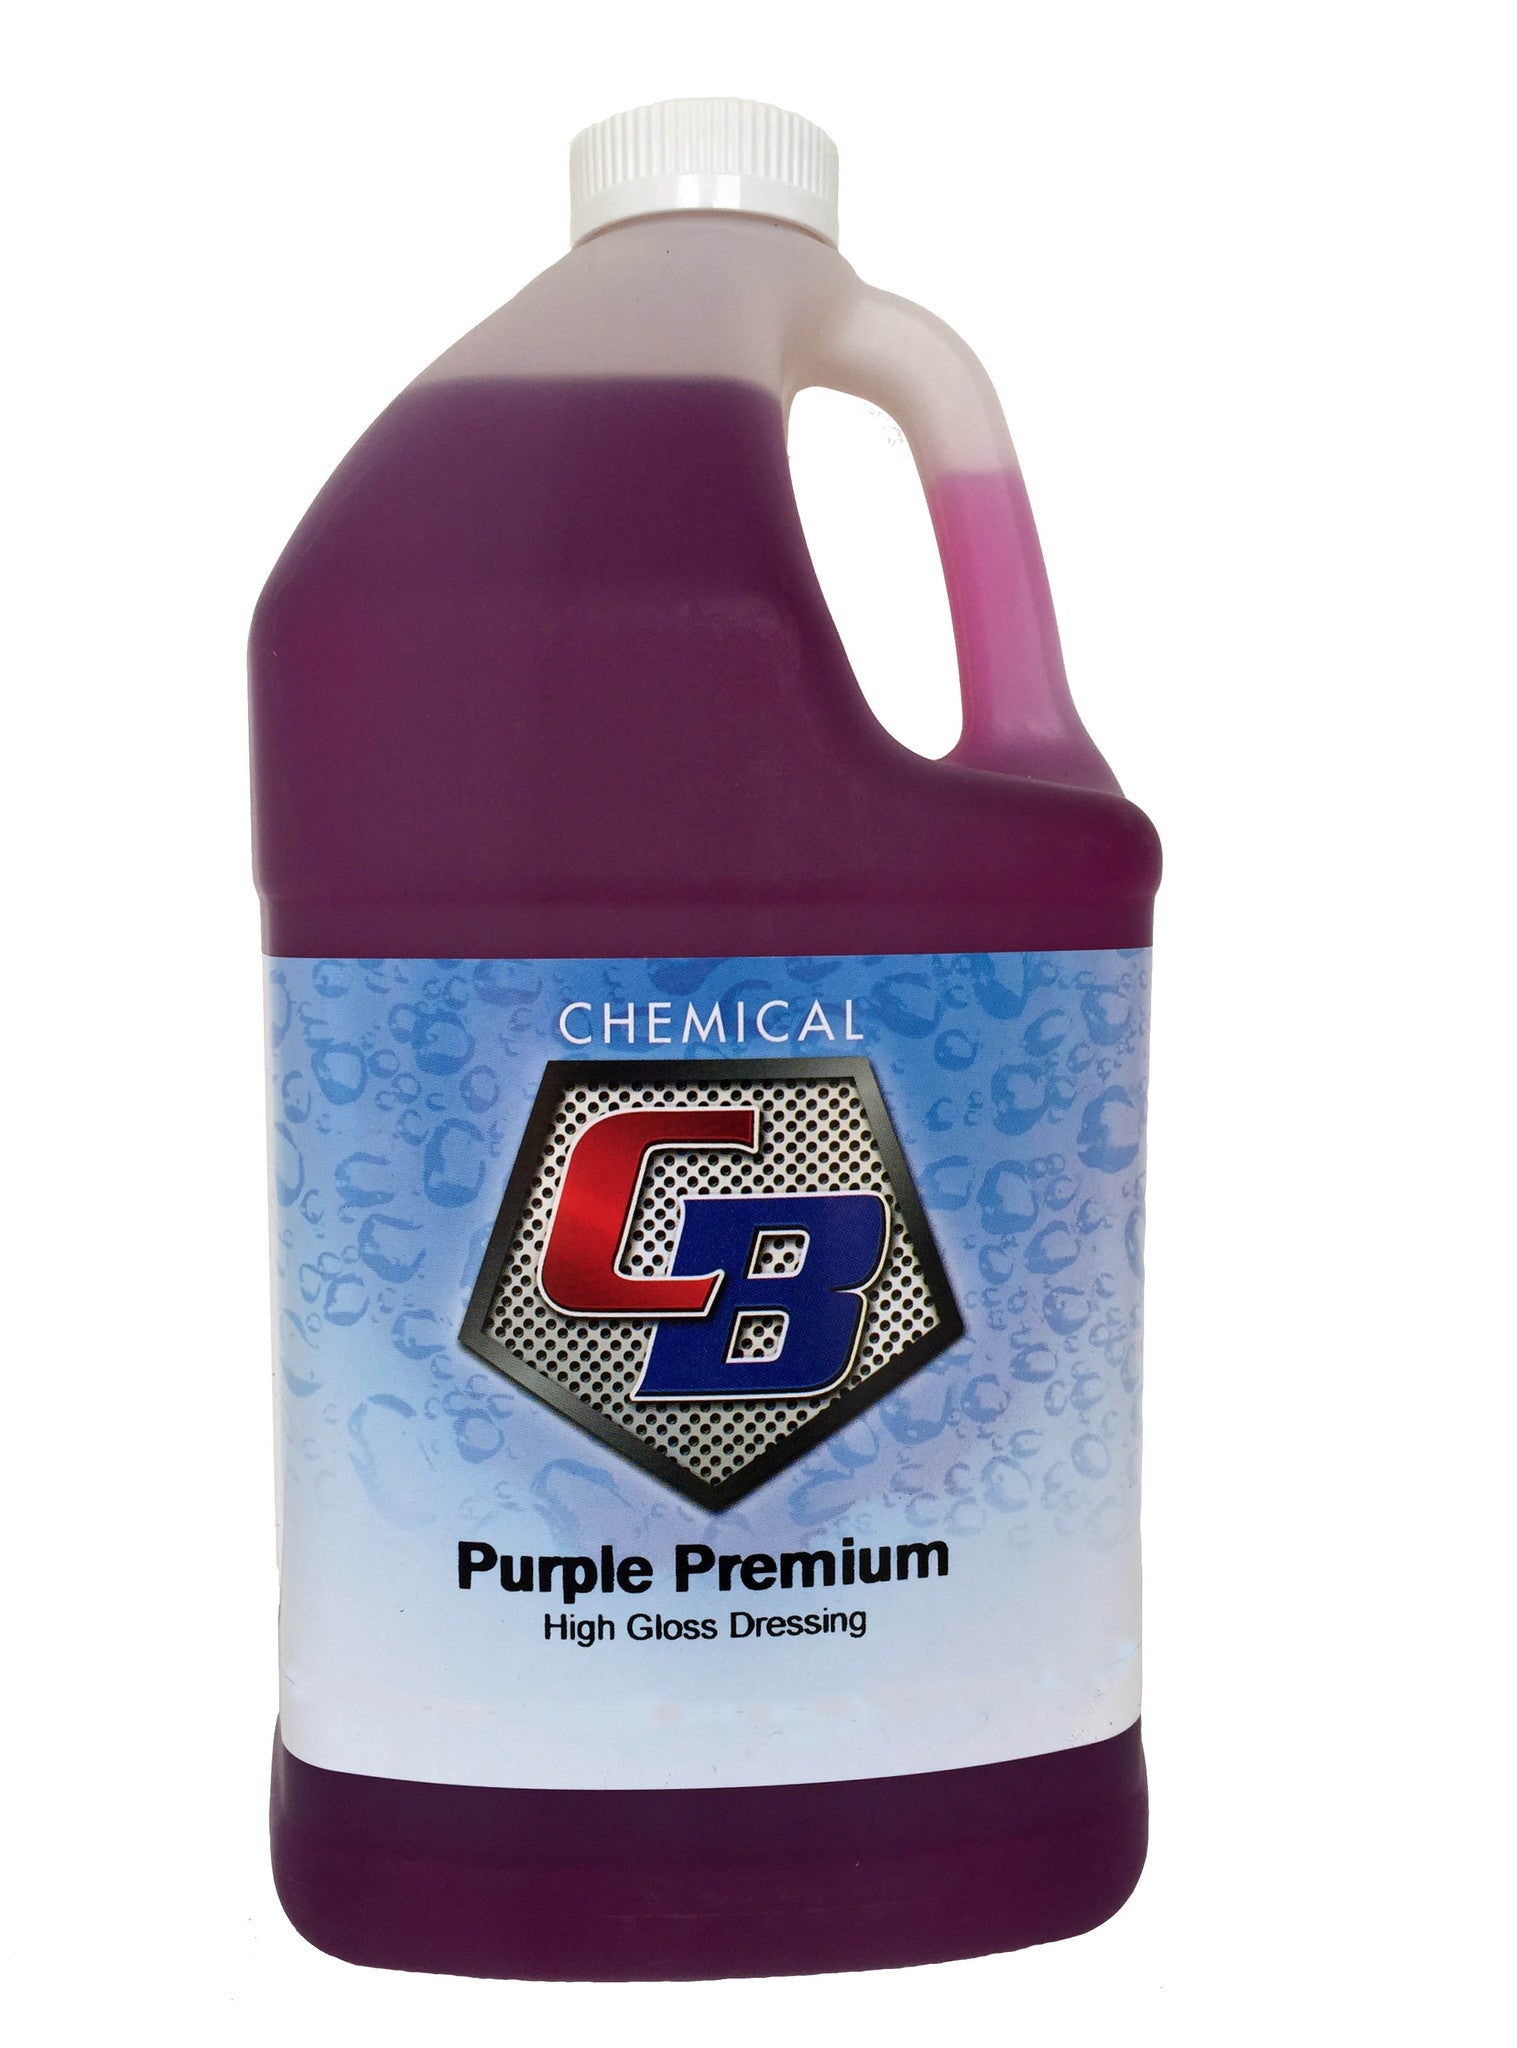 Purple Premium - C & B Chemical, Inc